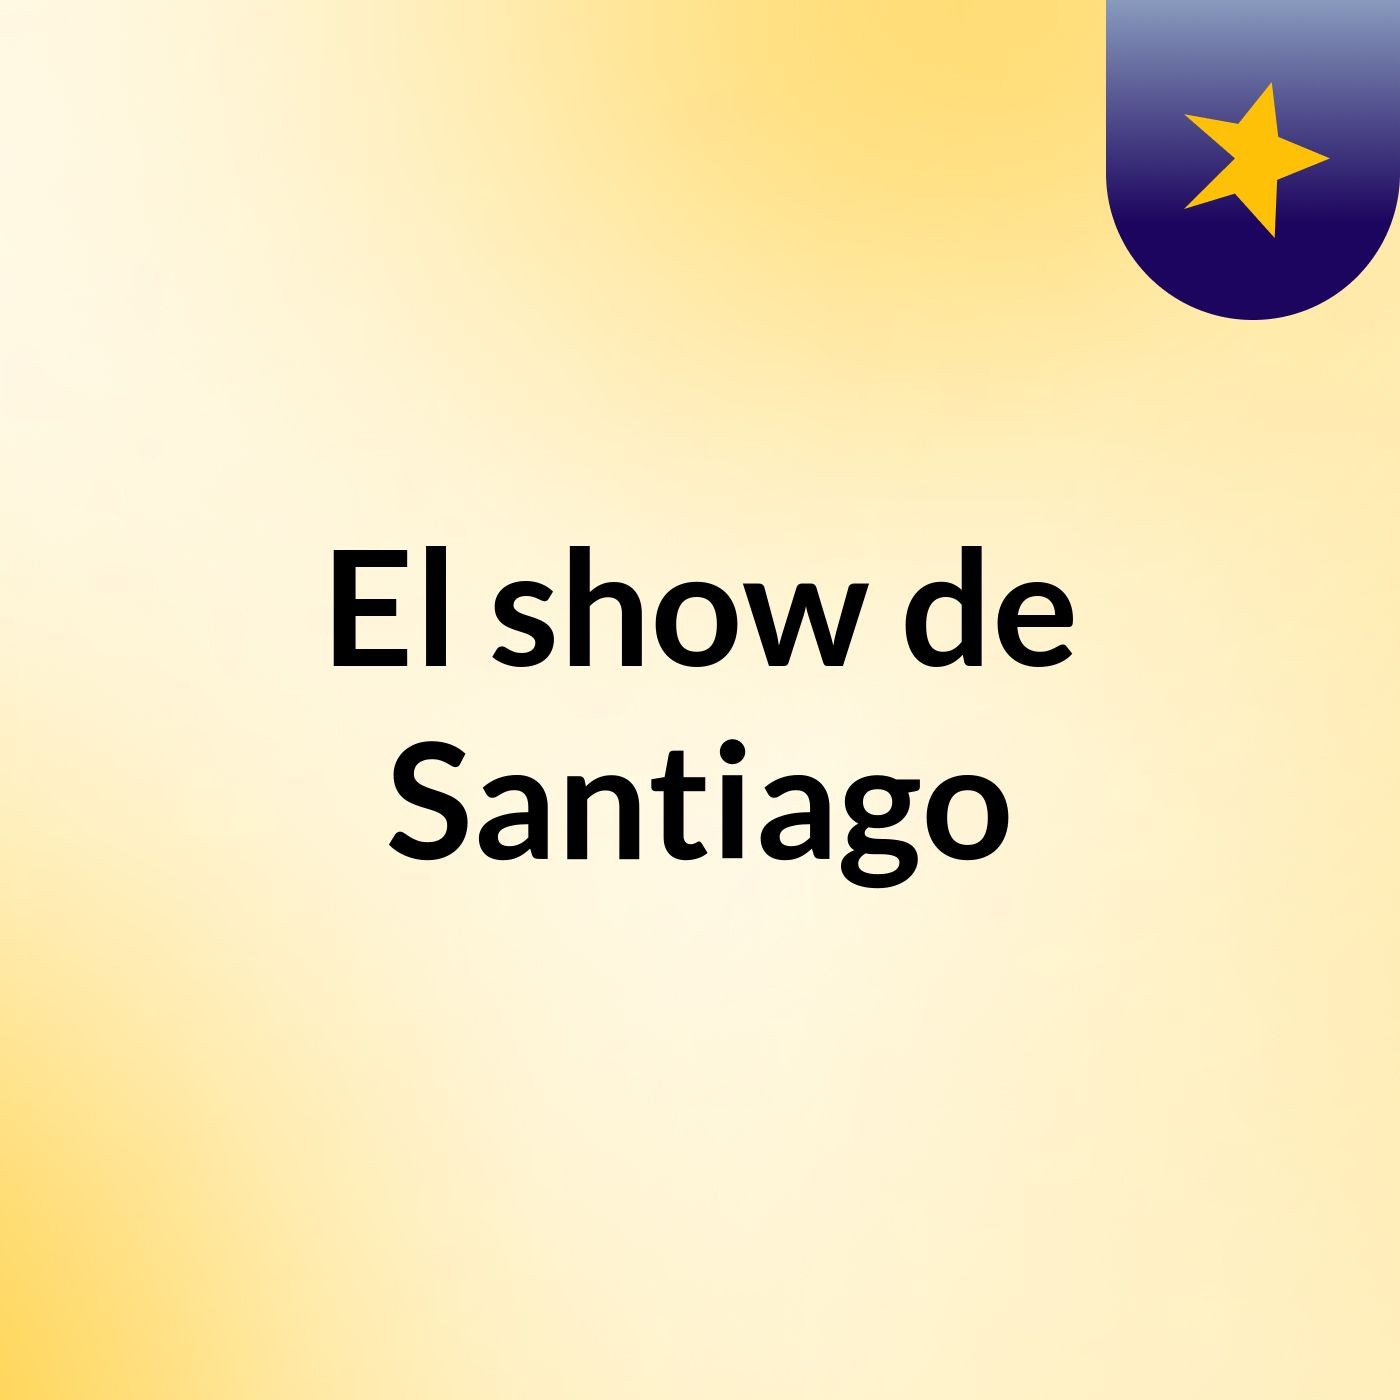 El show de Santiago